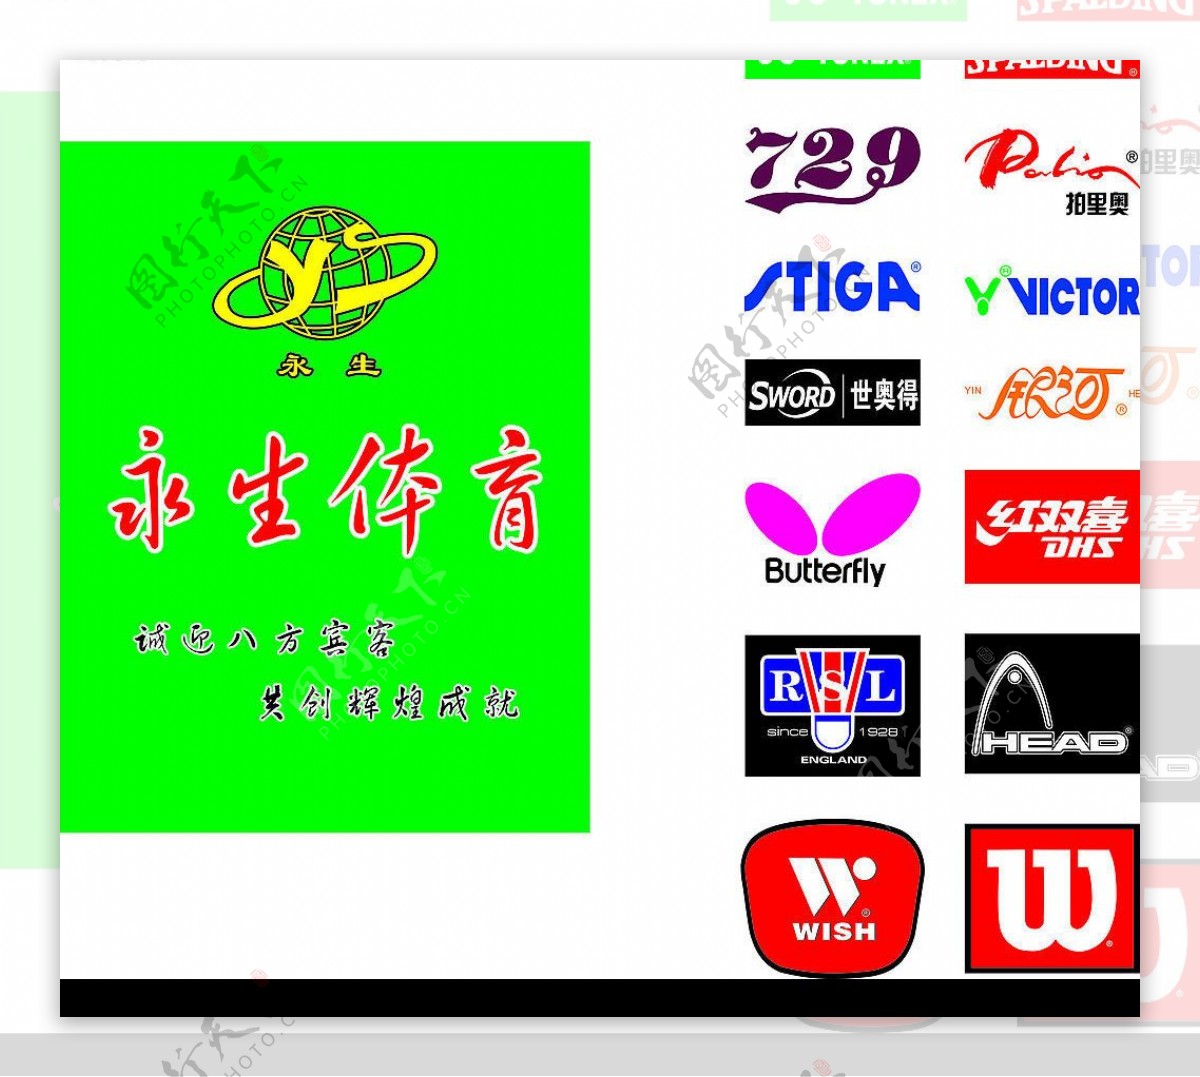 永生体育中国体育用品驰名商标图片